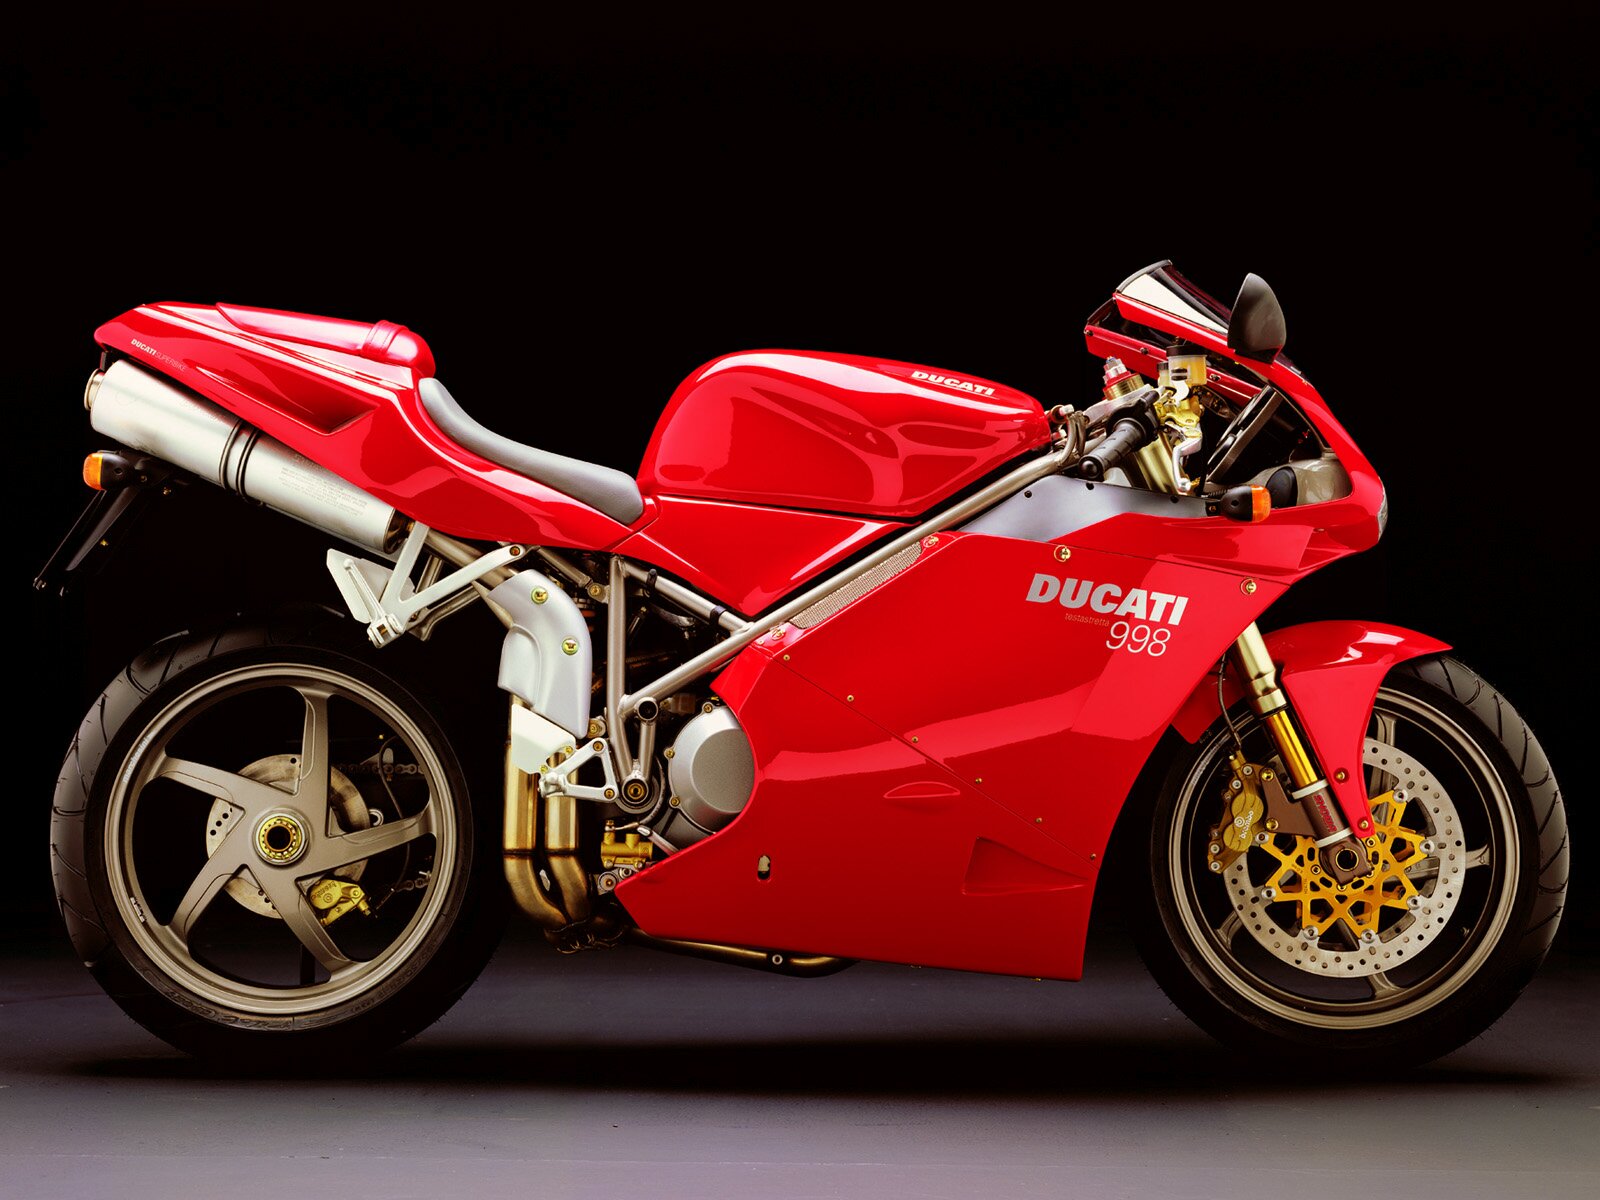 Ducati 998 Pictures